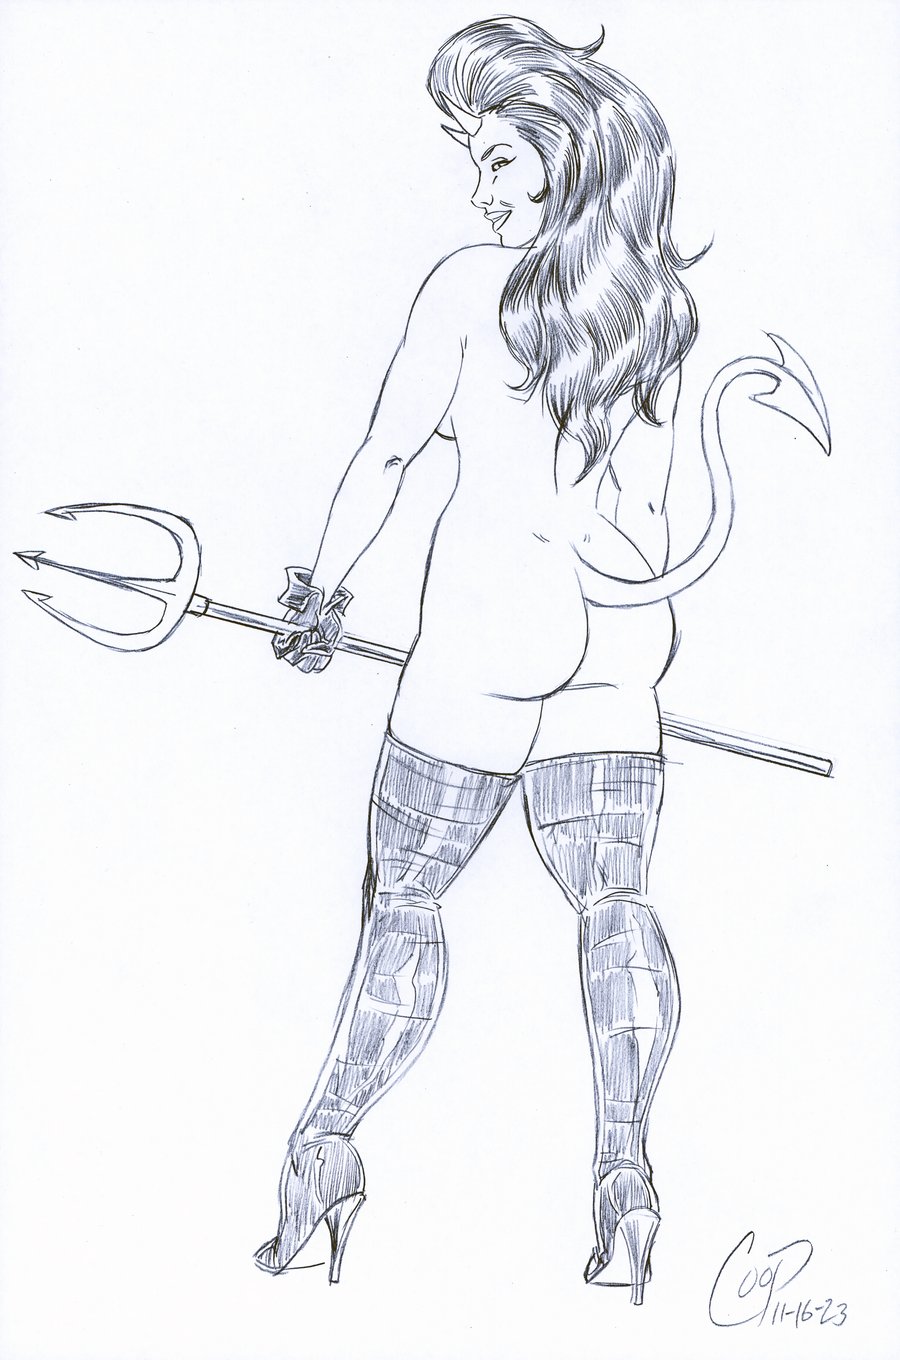 Image of PITCHFORK DEVIL GIRL Original sketch